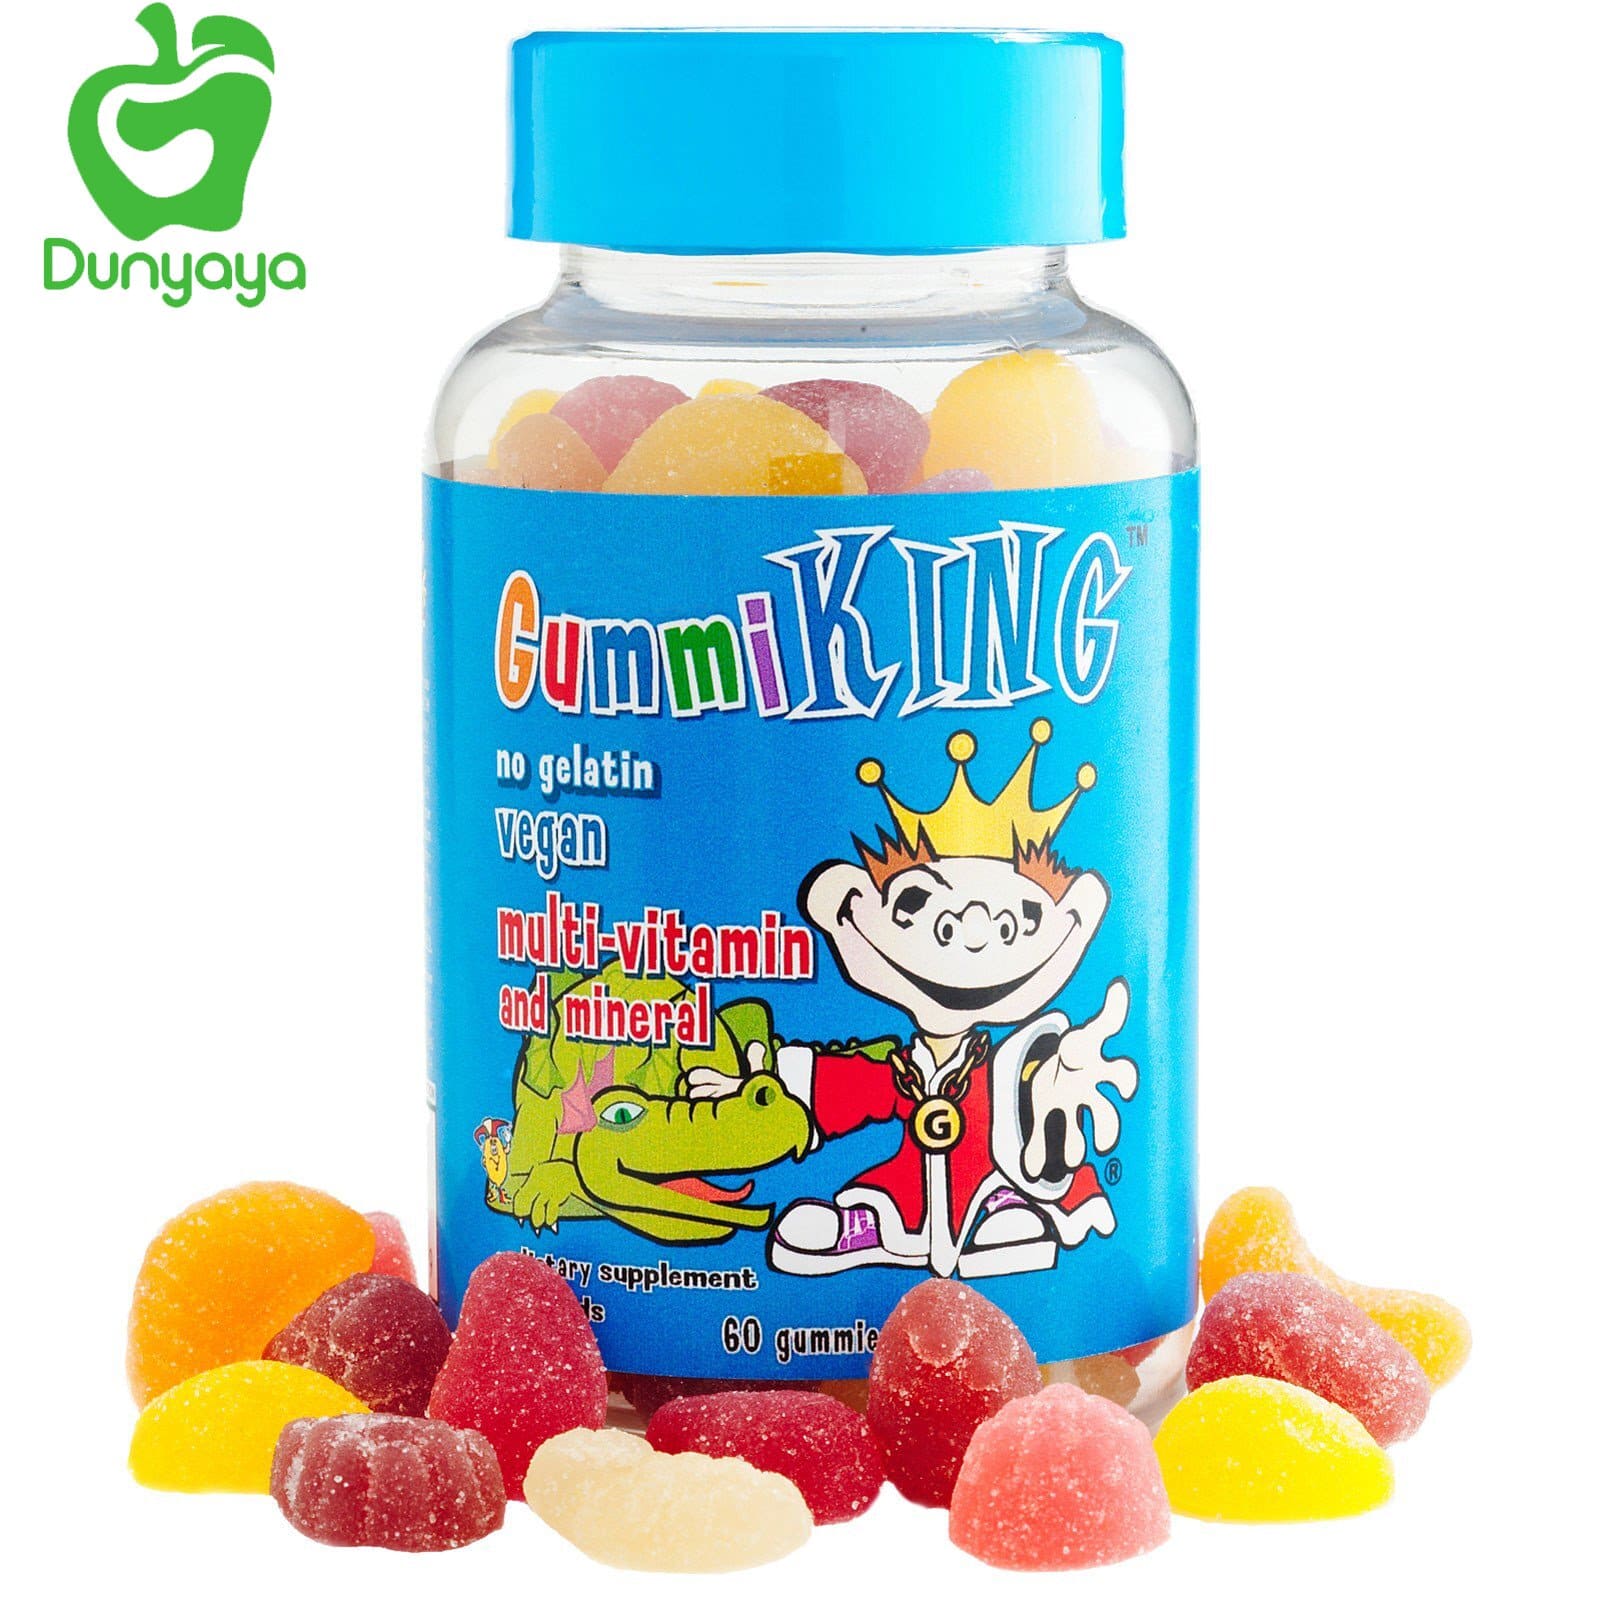 فيتامين gummi king للاطفال-أهم الفيتامينات والمعادن في فيتامين gummi king